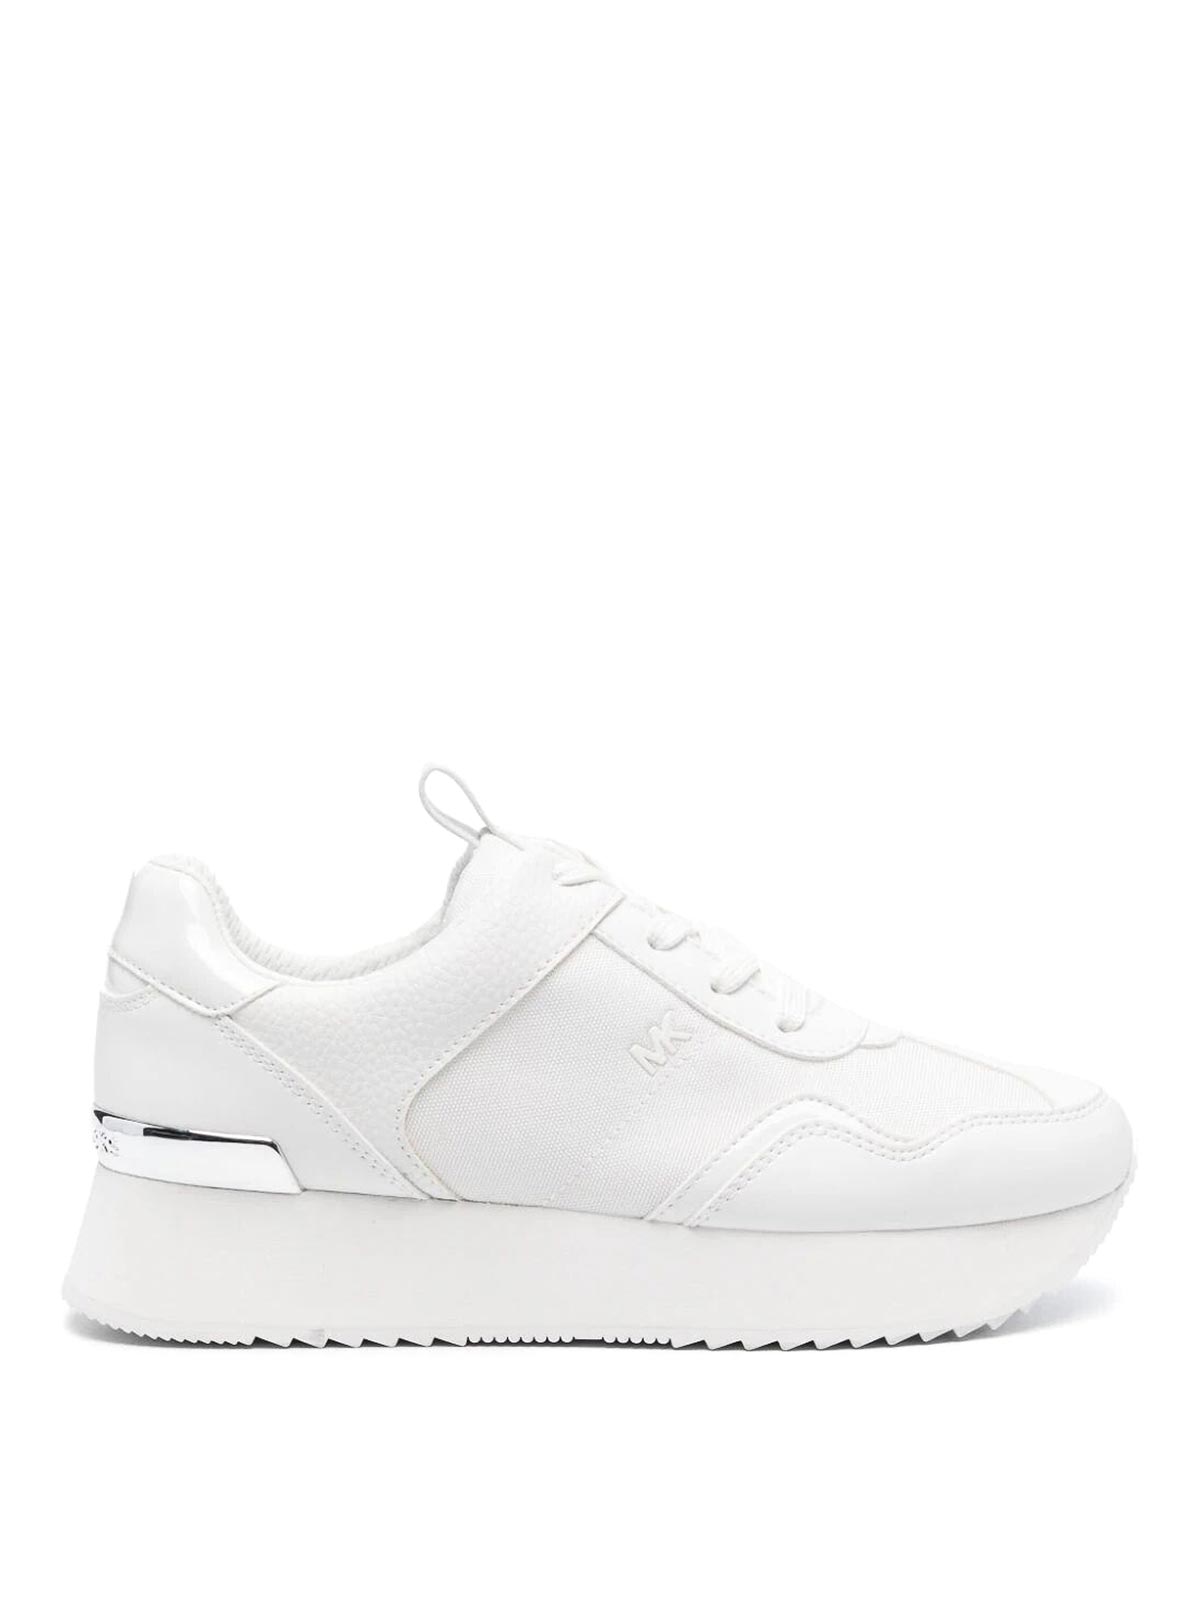 Michael Kors Raina Sneakers In White